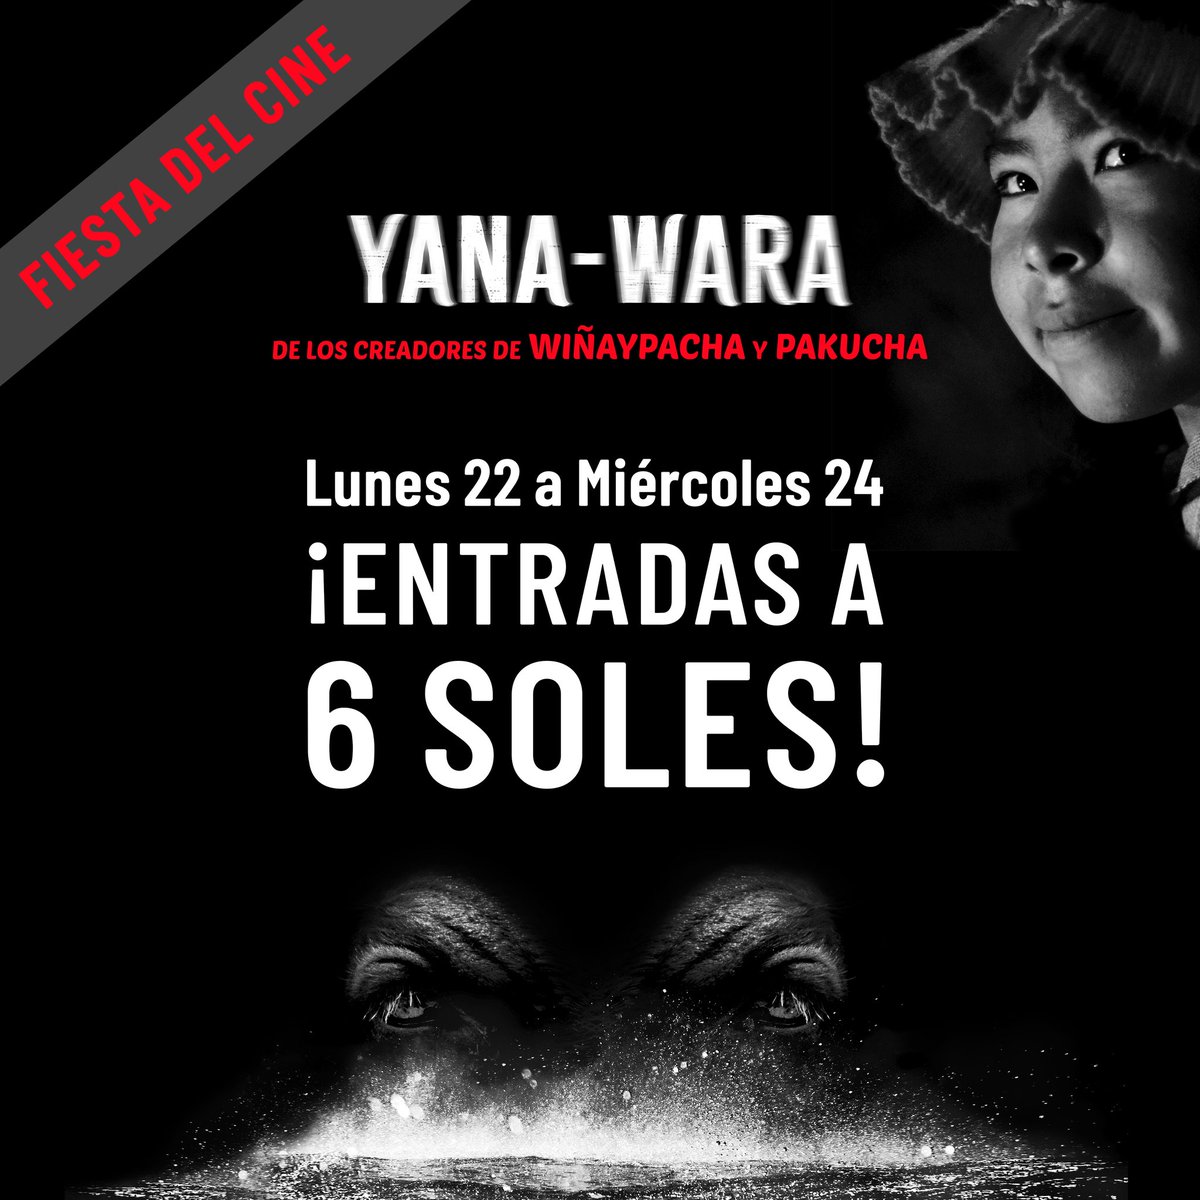 #YanaWara a 6 soles! Por el Día del Cine, este lunes 22, martes 23 y miércoles 24, todas las funciones de 'Yana-Wara' están a precio de oferta, solo 6 soles. En @cineplanet @Cinemark_Peru y MovieTime. 💪🏽🇵🇪🎥🐂 #cineandino #Cineperuano #cinepuneño #aymara